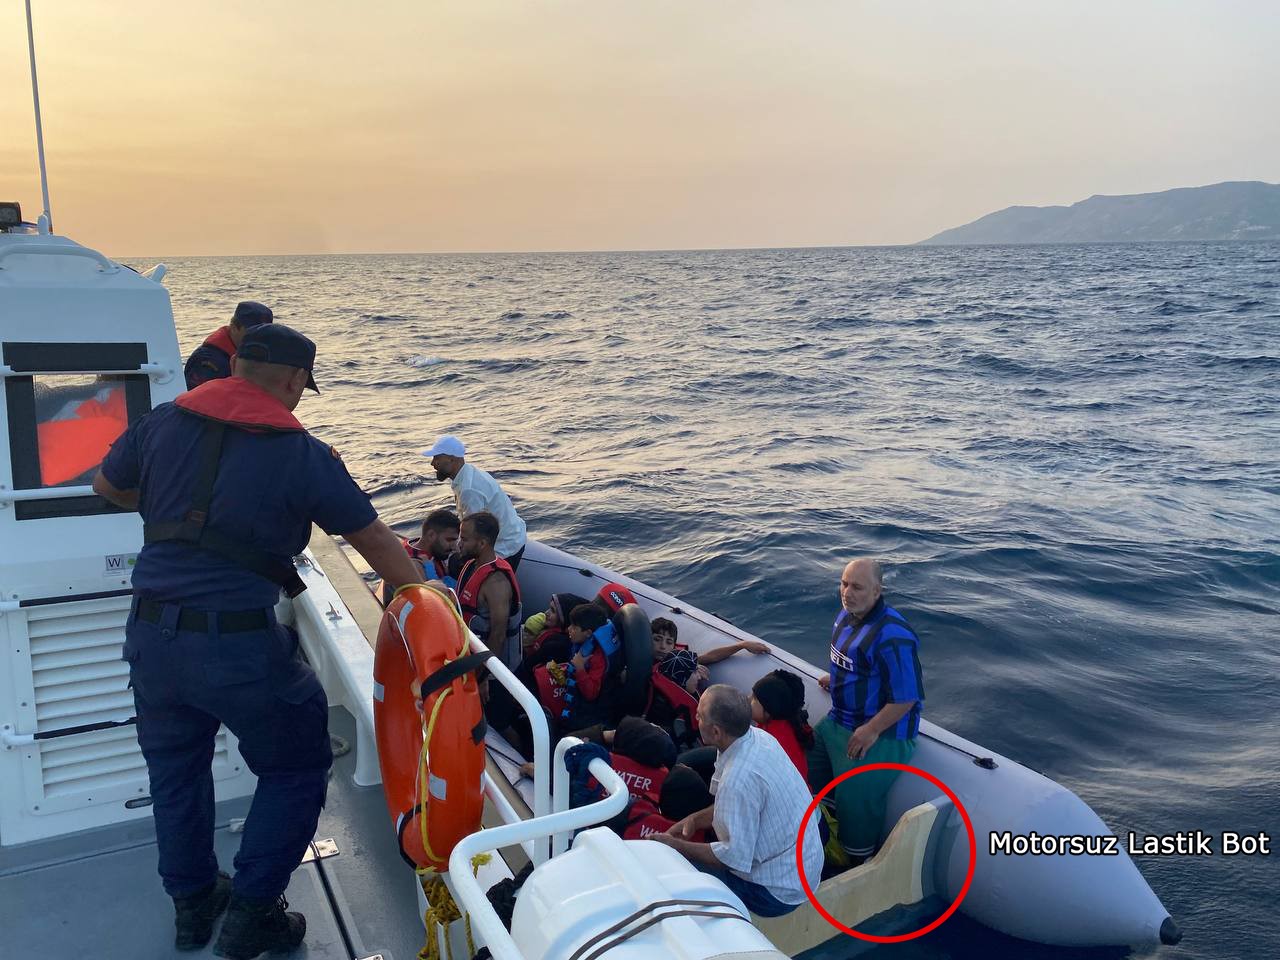 Yunan unsurları motorlarını söküp ölüme terk etti. 20 kaçak göçmen kurtarıldı